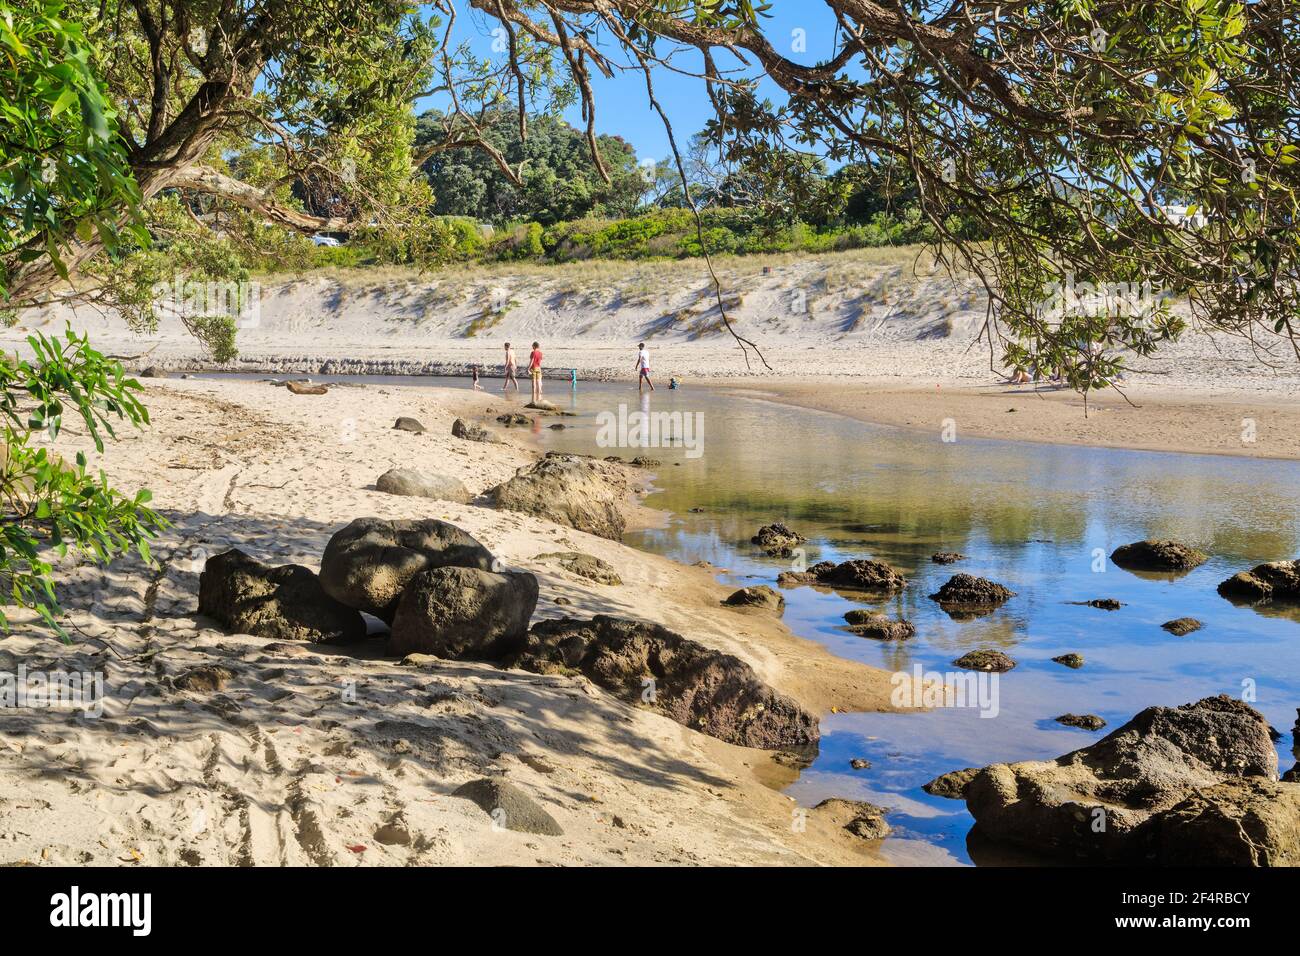 Scena costiera a Whiritoa, Nuova Zelanda. Un ruscello scende verso l'oceano, circondato da foreste e dune di sabbia Foto Stock